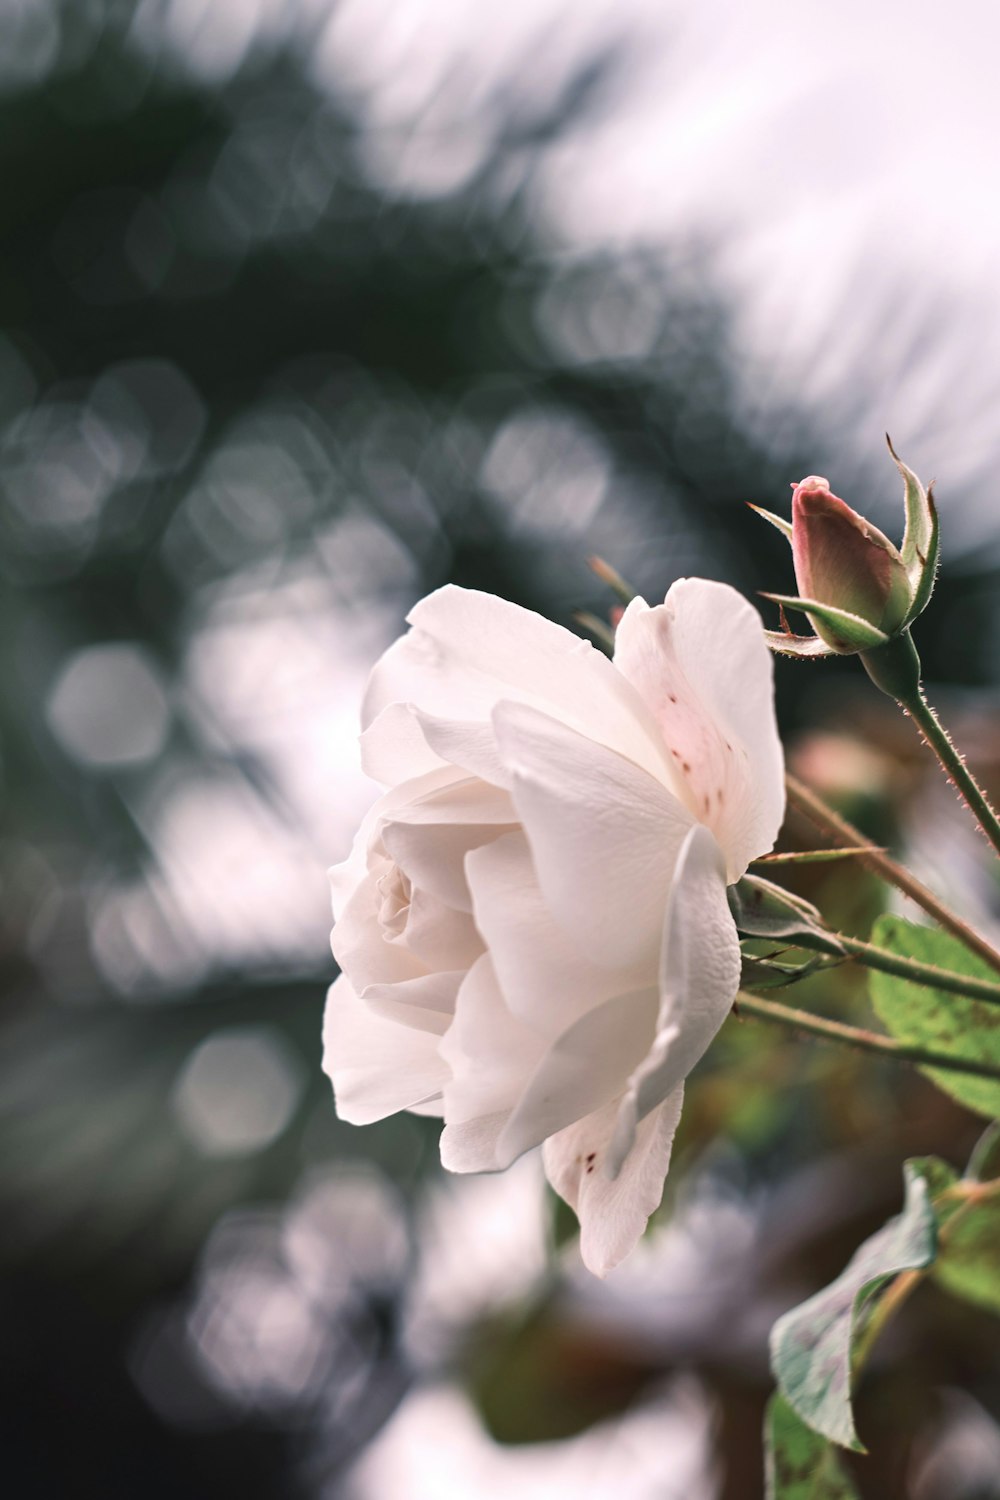 rosa branca na fotografia de perto